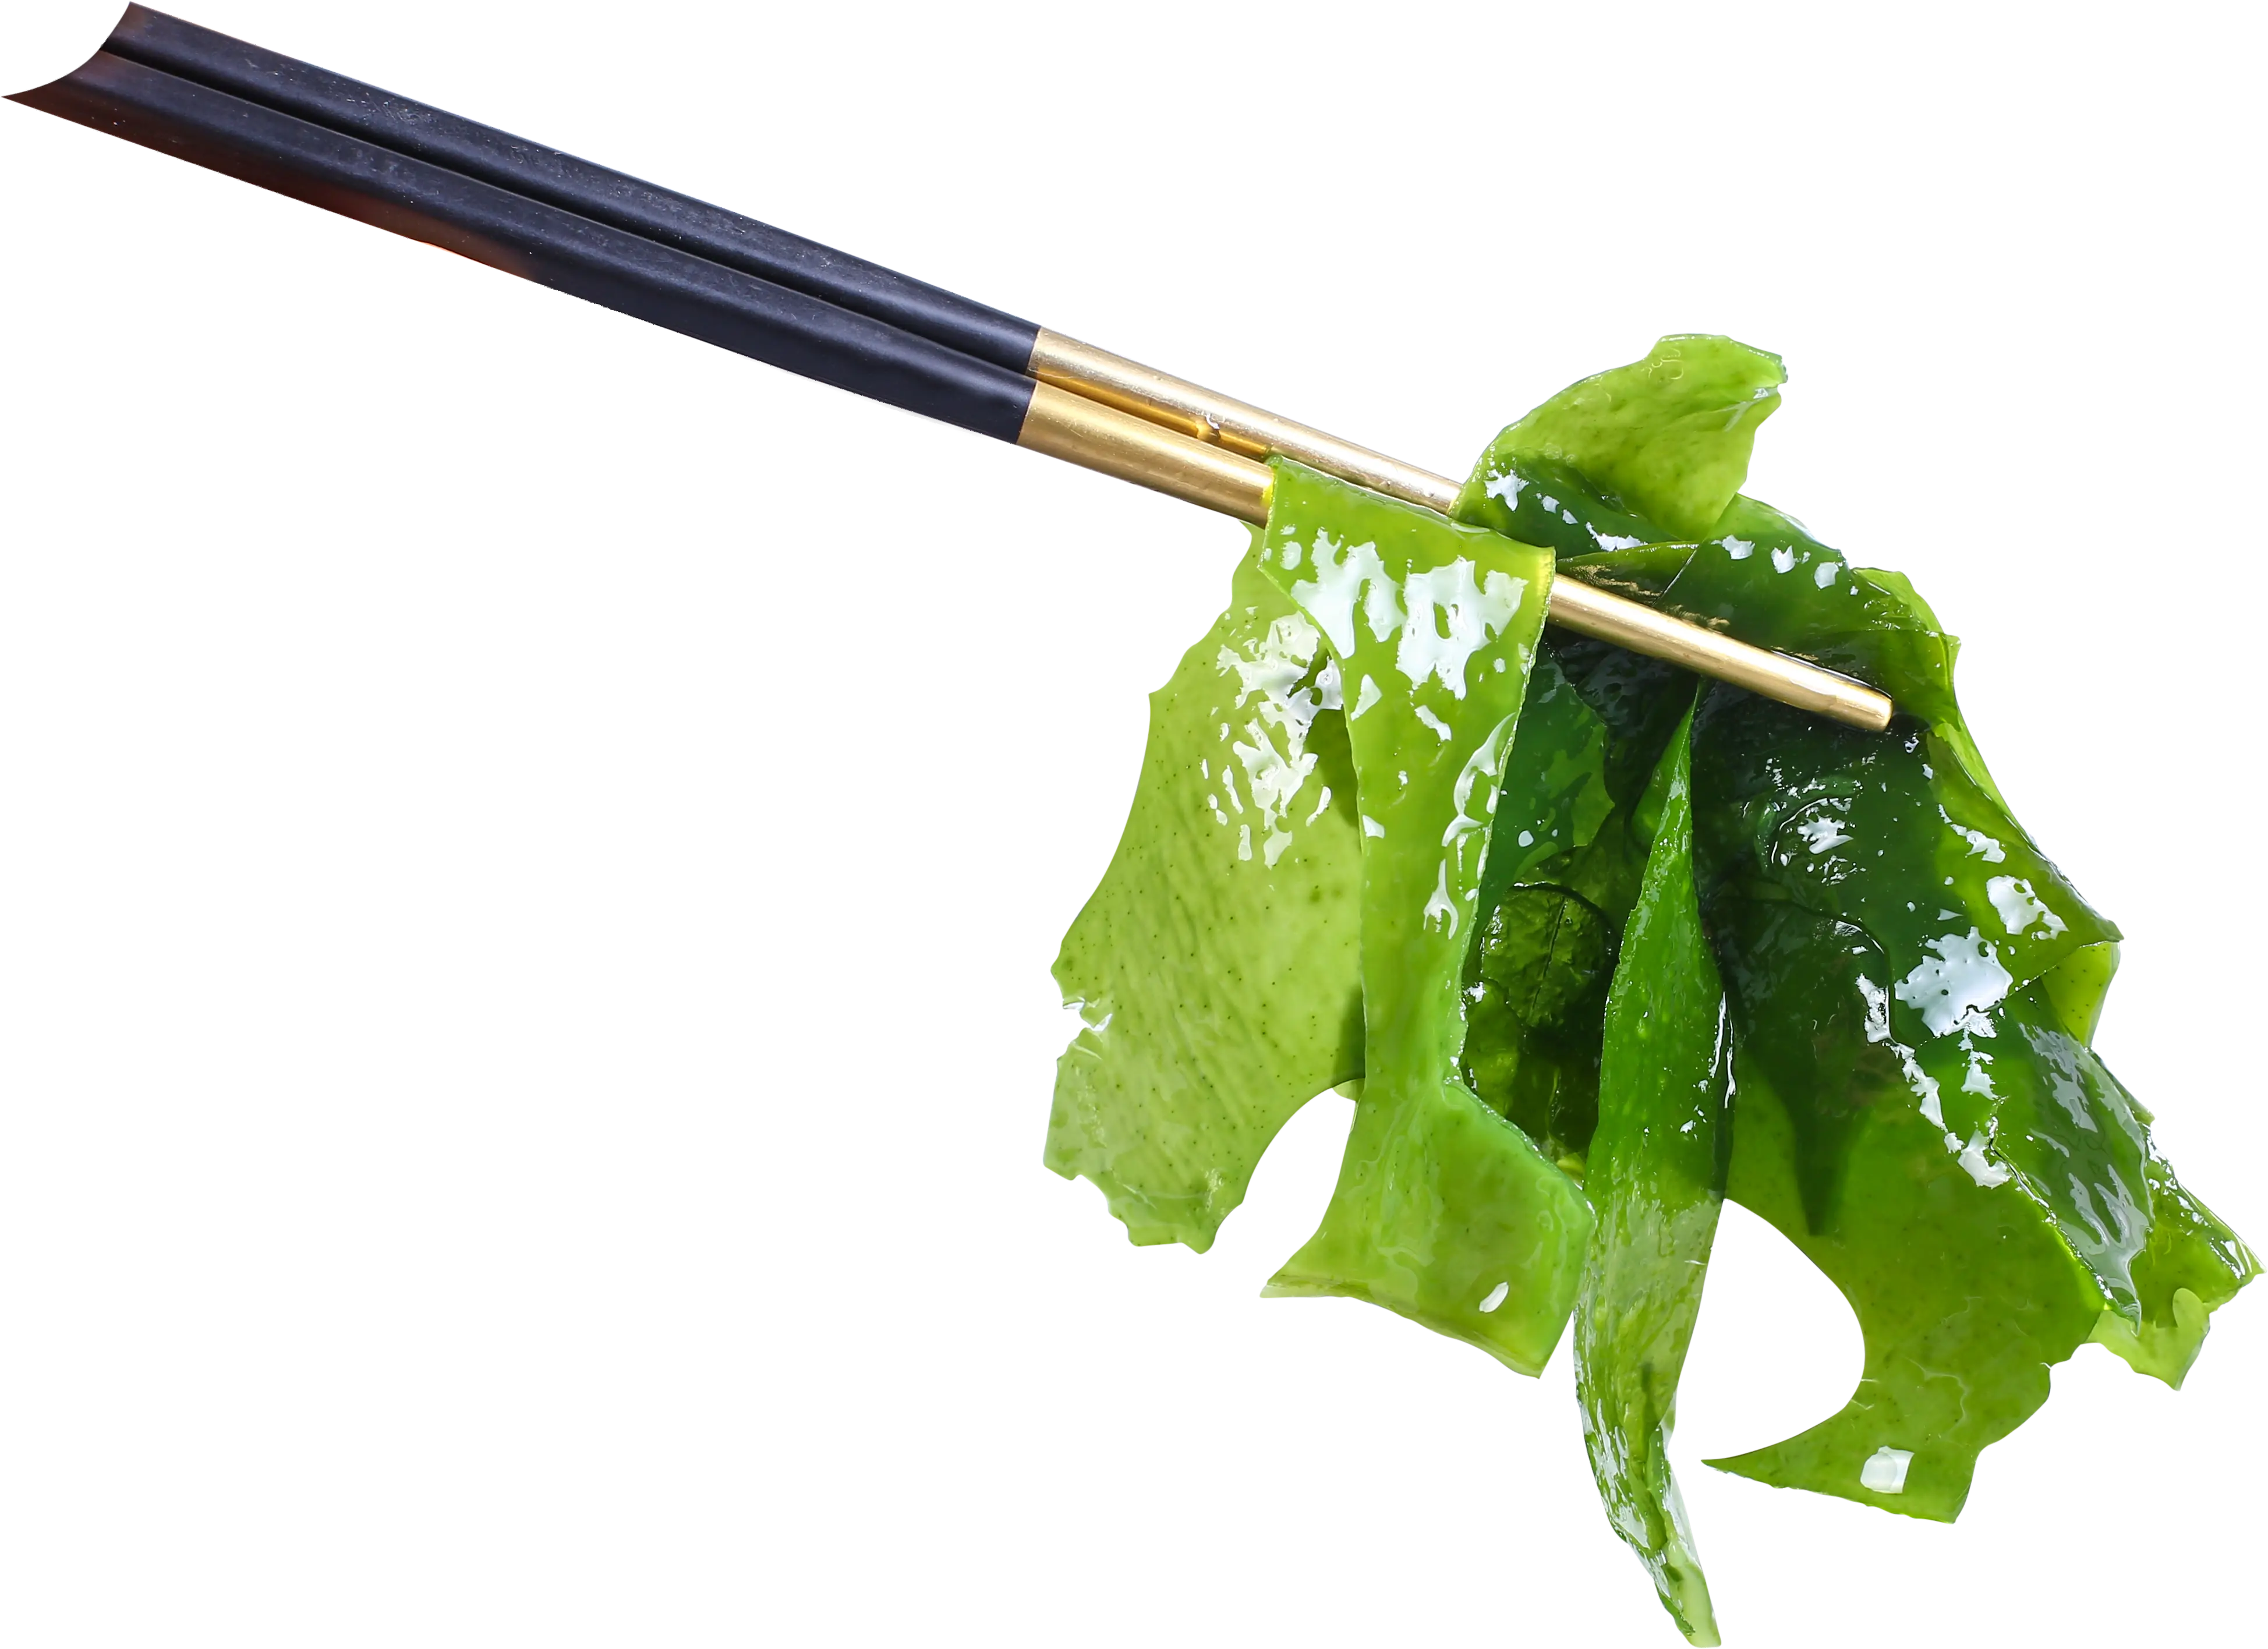 Venta al por mayor de algas secas frescas Undaria pinnatifida cortadas con certificados Halal y Kosher